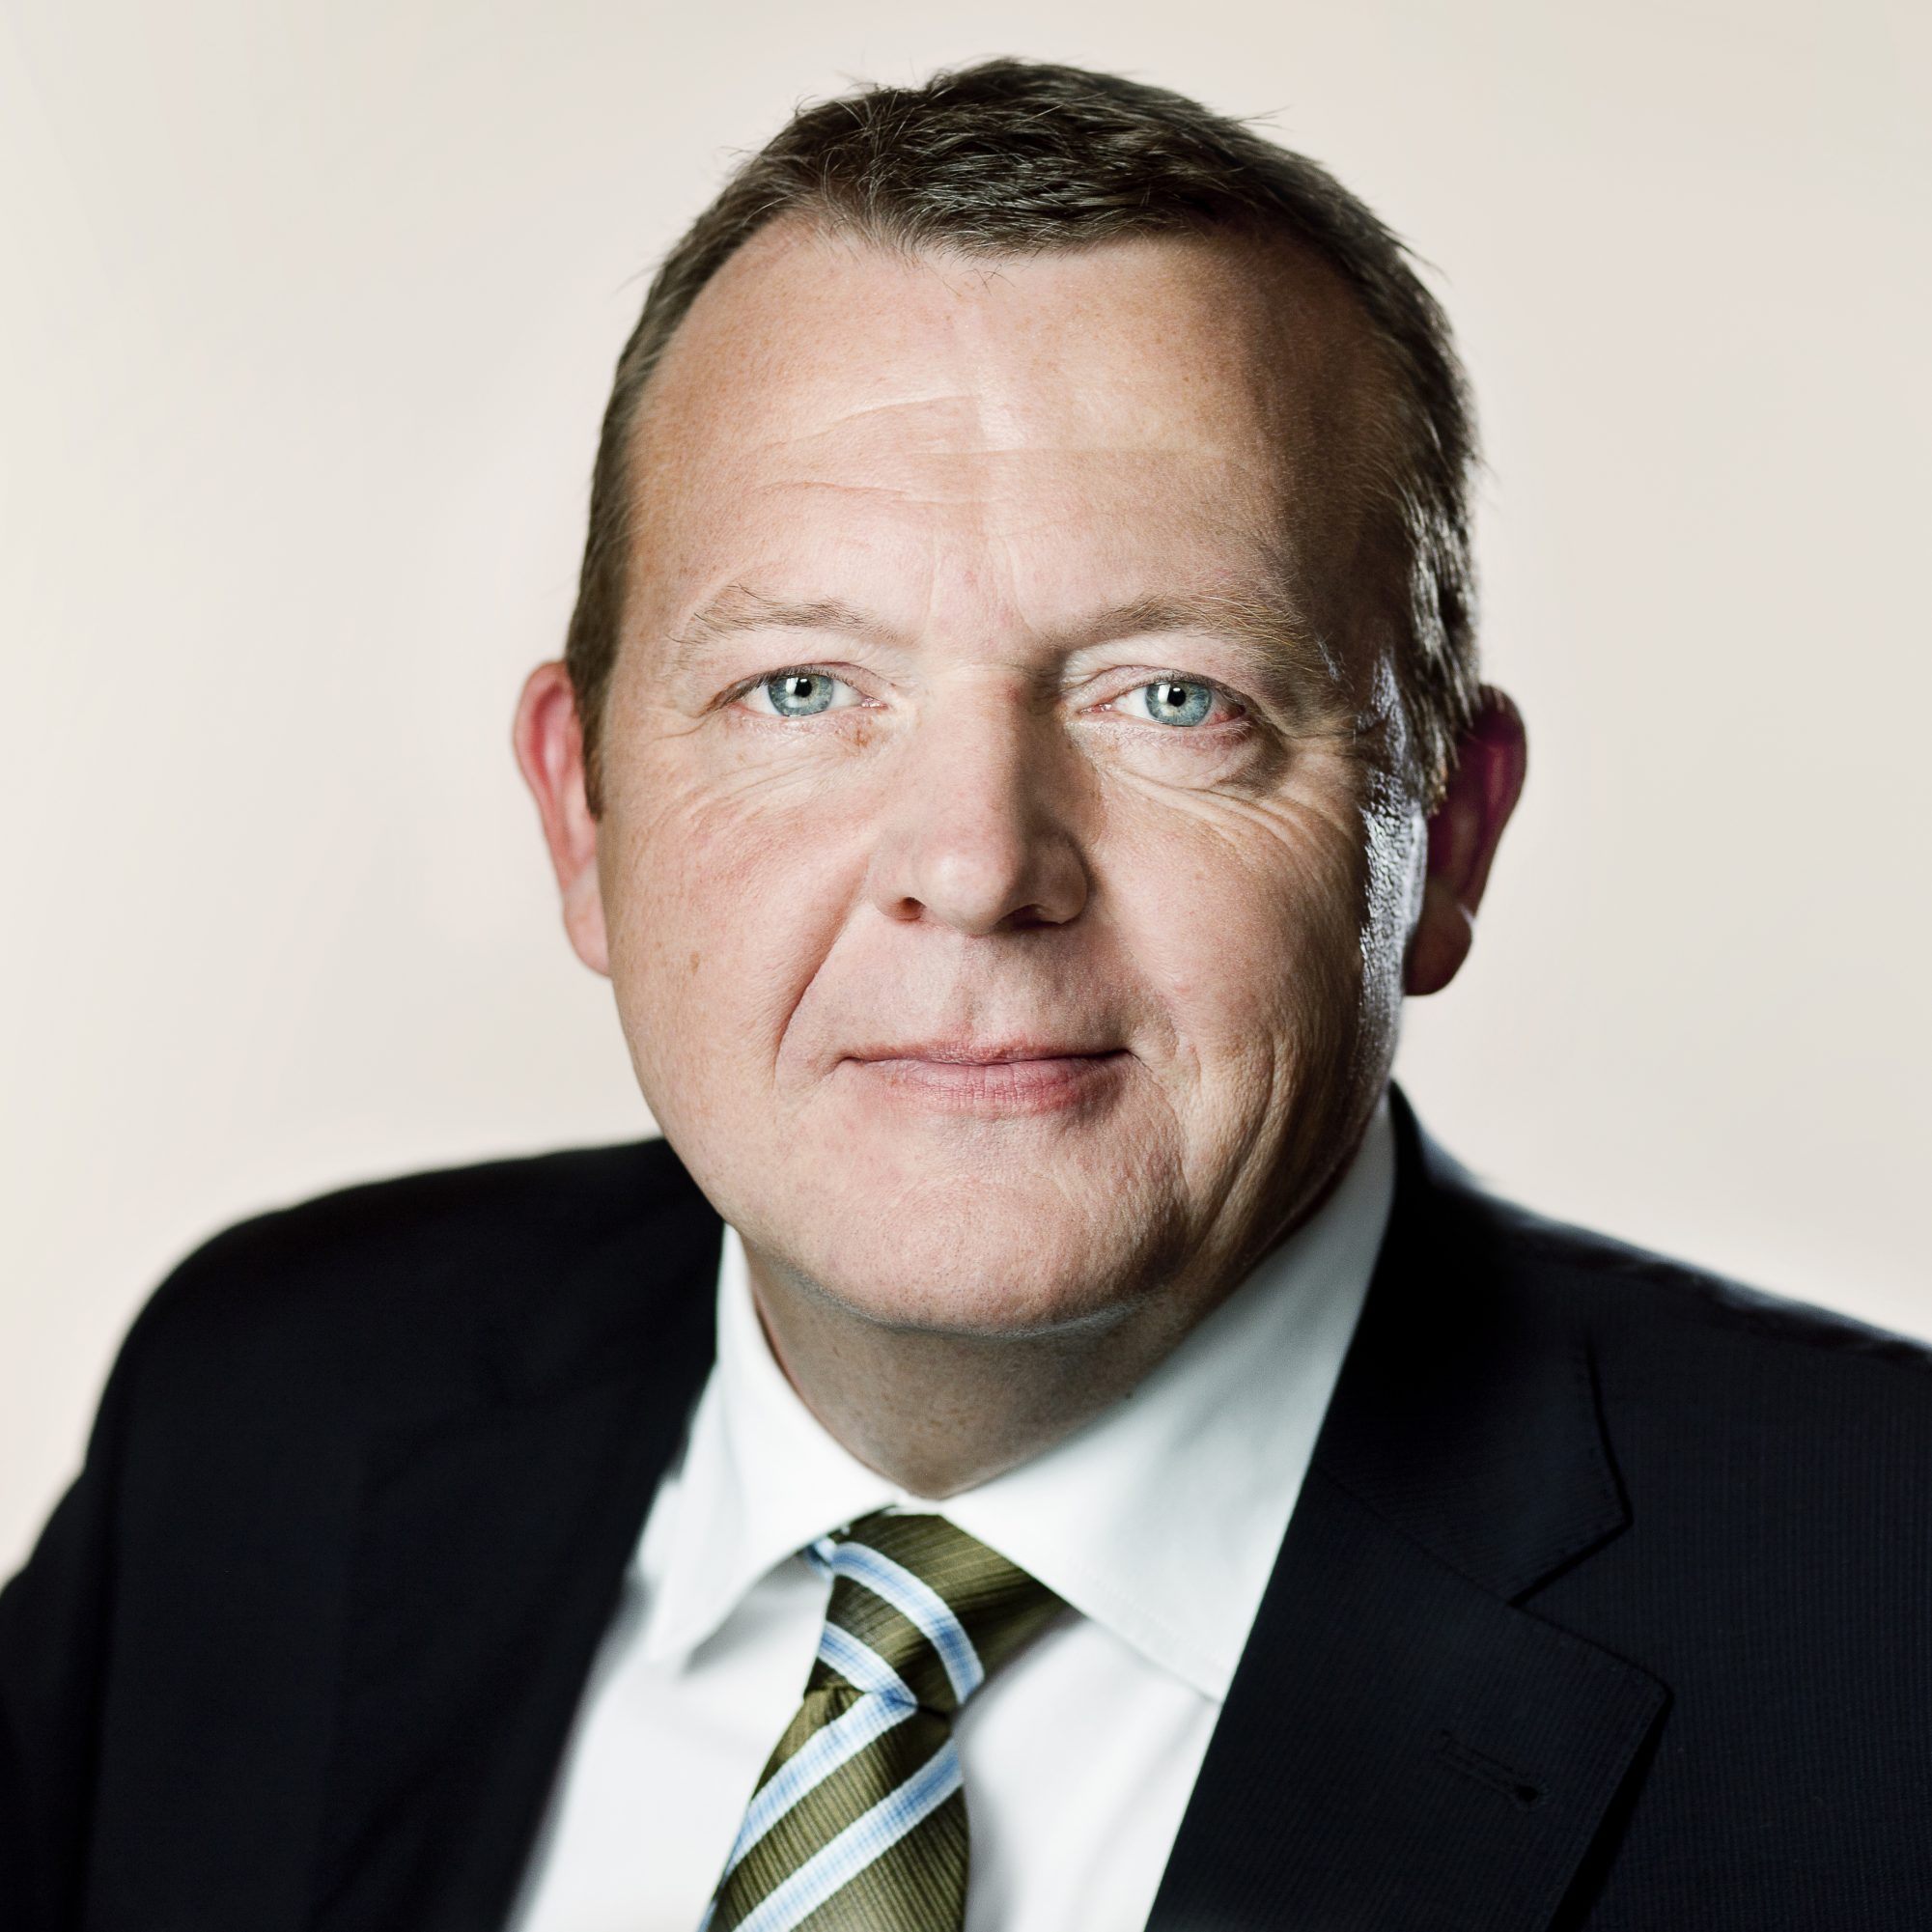 Rasmussen, Lars Løkke